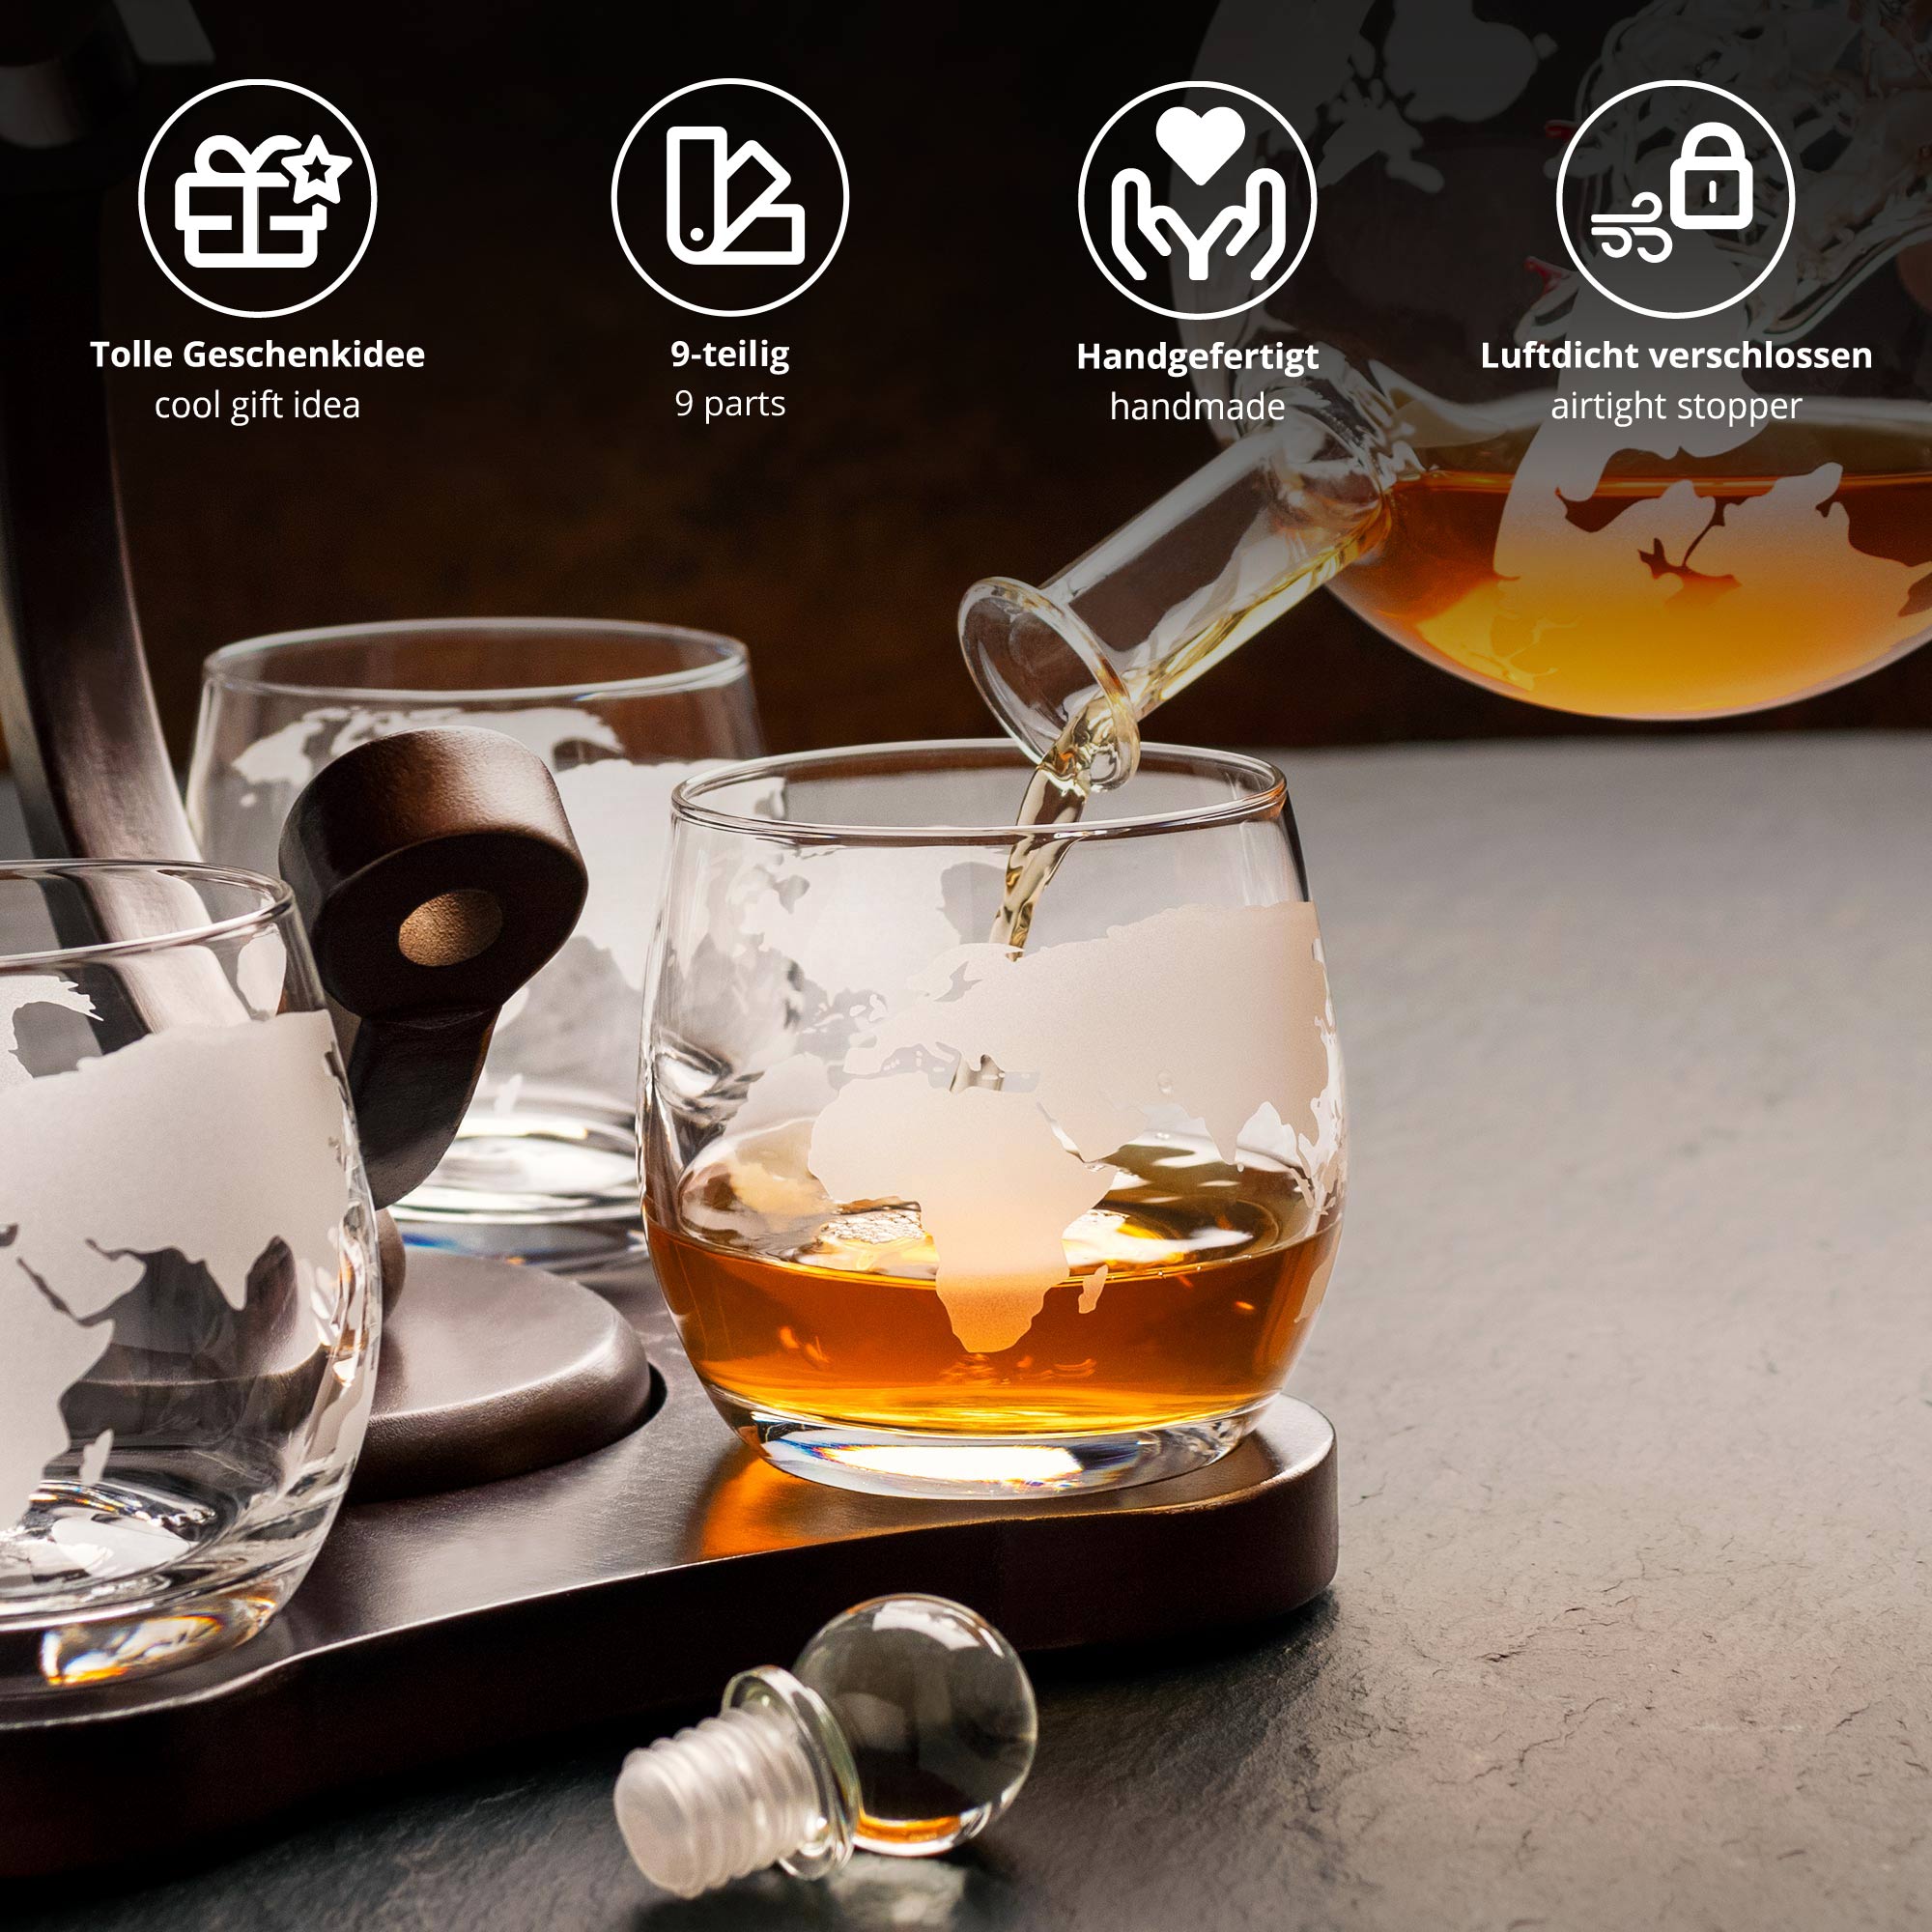 Whisky Globus Glaskaraffe mit Flaschenschiff und 4 Gläsern, Whisky Set mit gravierter Plakette, Glas Dekanter im handgefertigter Echtholz-Ständer